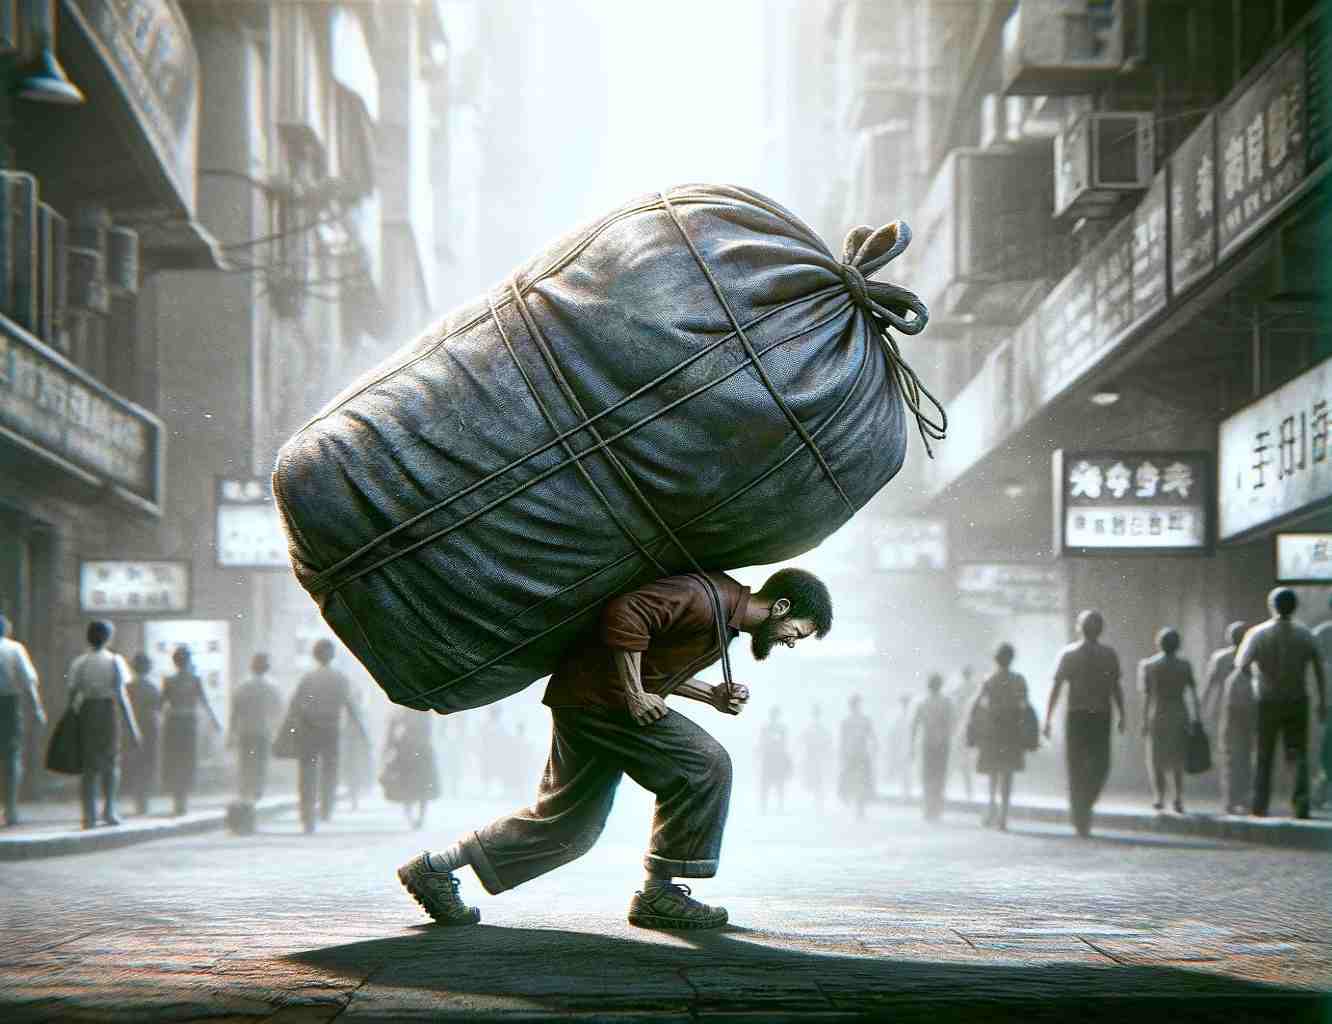 Egy realisztikus szélesvásznú kép egy személyről, aki egy nagyon nehéz táska cipelésével küzd. A jelenetnek városi környezetben kell játszódnia, esetleg egy buszon.